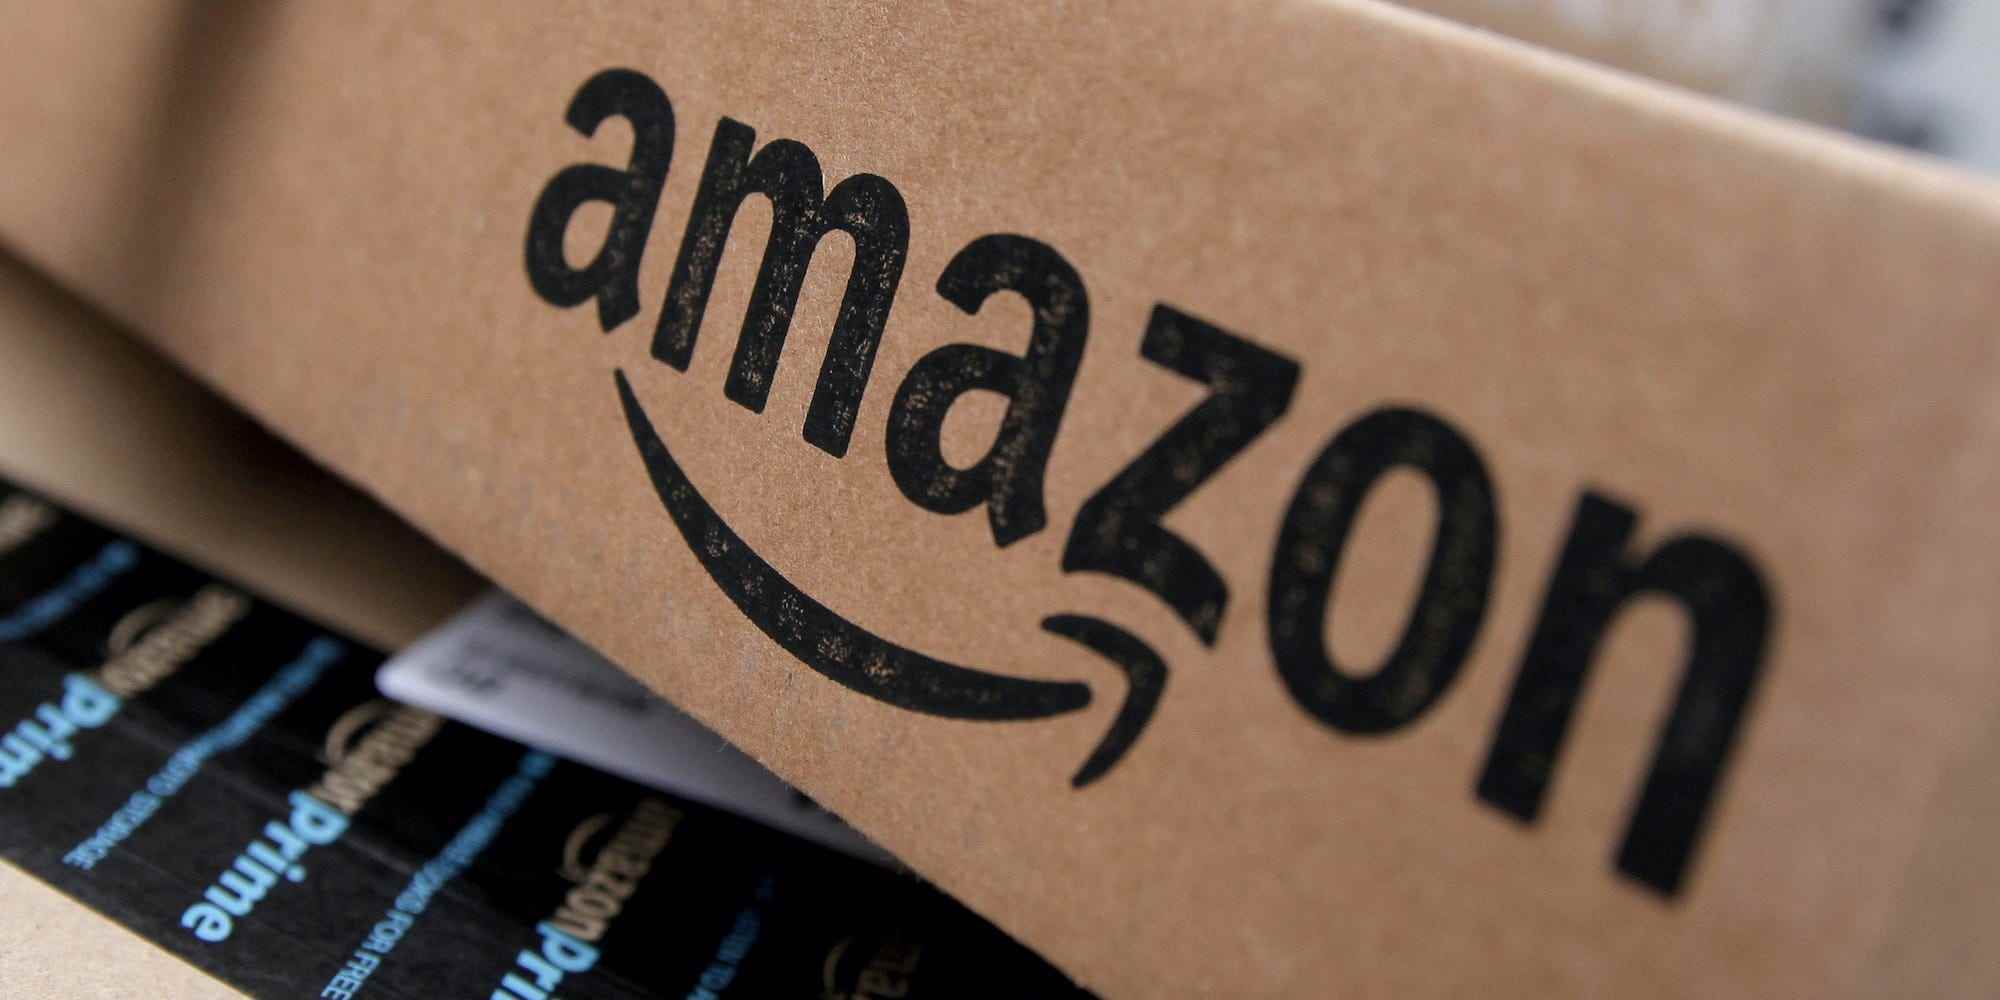 Amazon-Boxen